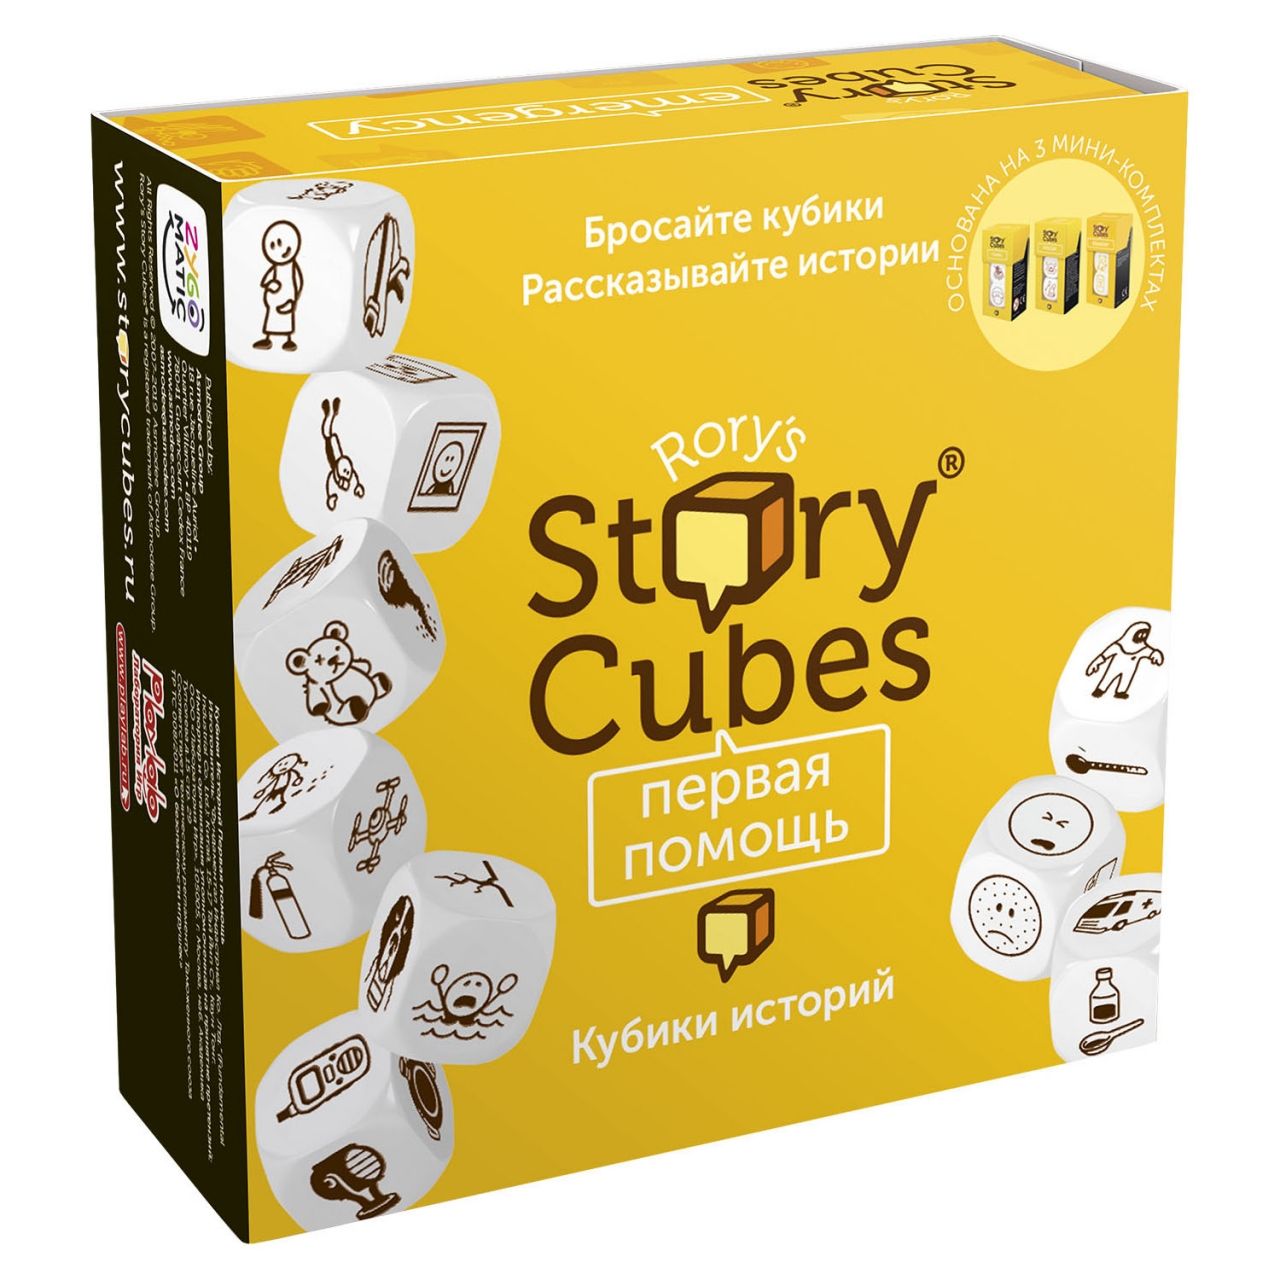 Настольная игра RORYS STORY CUBES RSC32 кубики историй Первая помощь настольная игра rubiks кубики историй фантазия